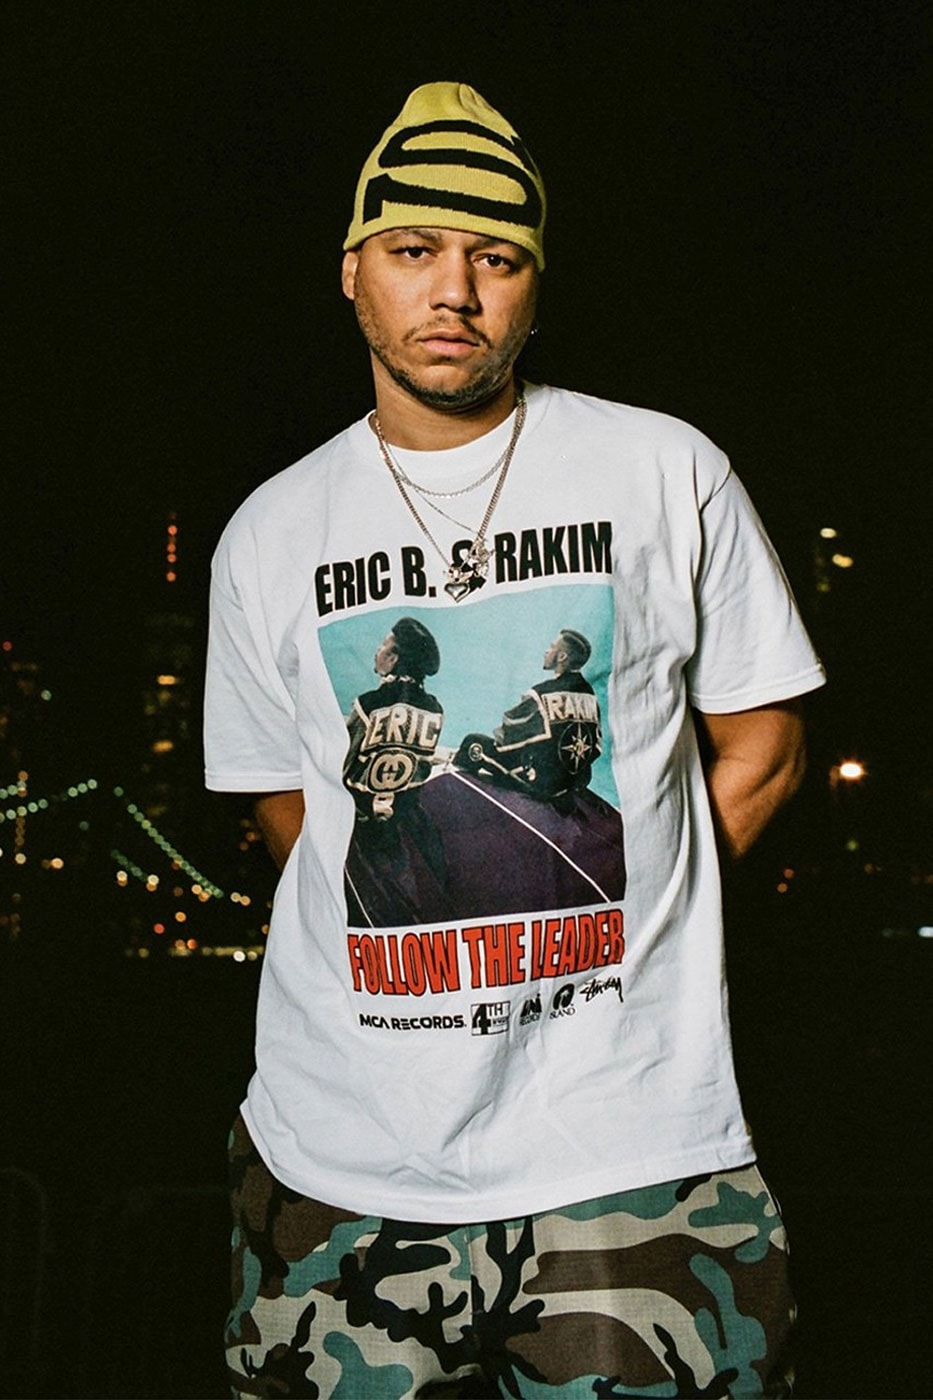 ステューシーが伝説的ヒップホップデュオ エリック B ＆ ラキムとのコラボコレクションを発表 Stüssy Drops New Collaboration With Rap Duo Eric B. & Rakim east coast rap duo dj mc rapper hip hop dover street market 